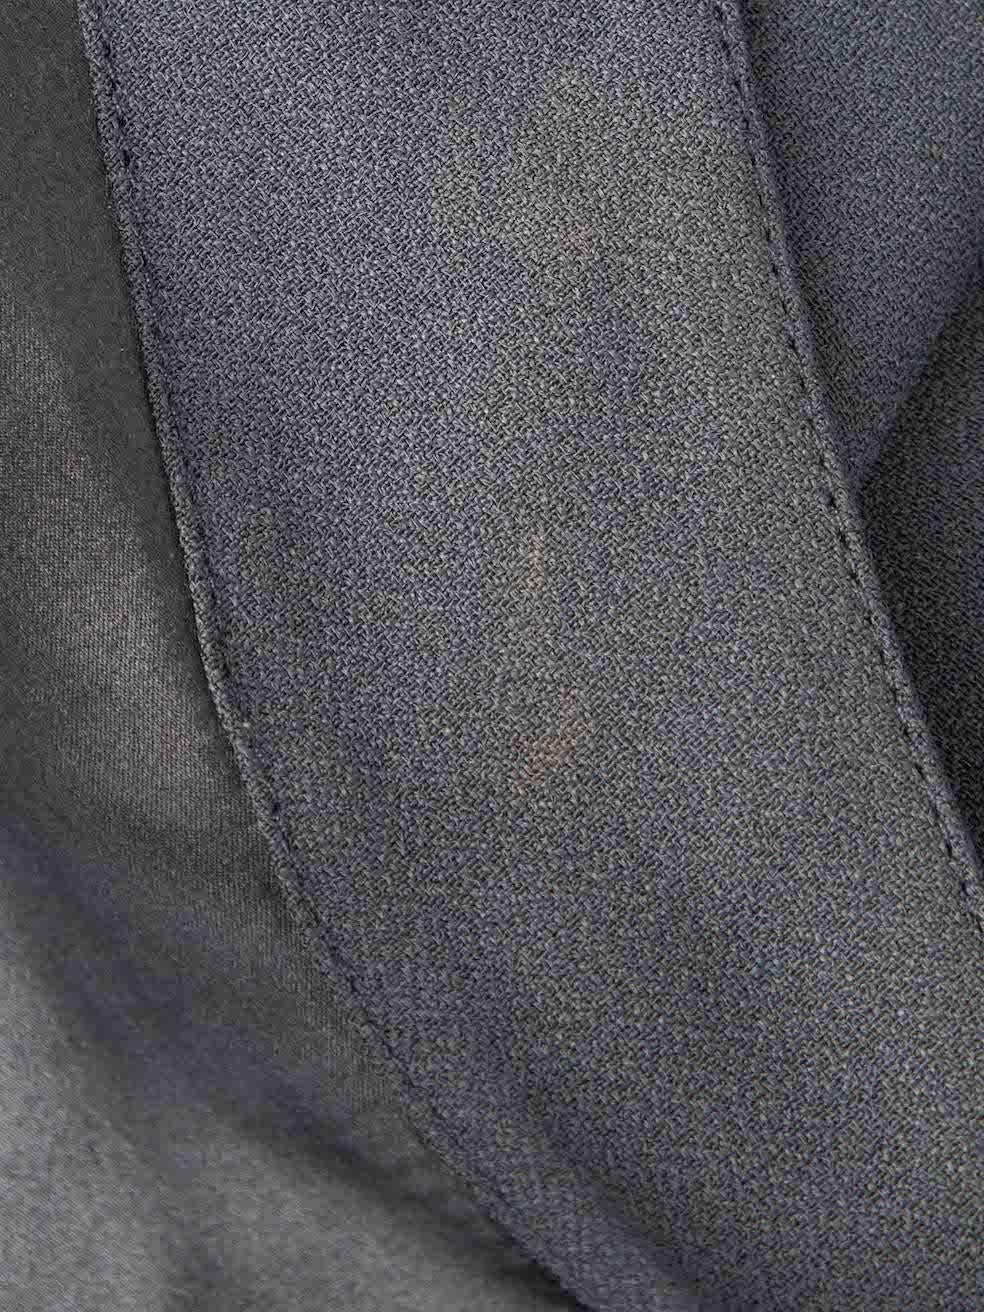 Women's Navy Cowl Neck Bias-Cut Evening Gown Size L For Sale